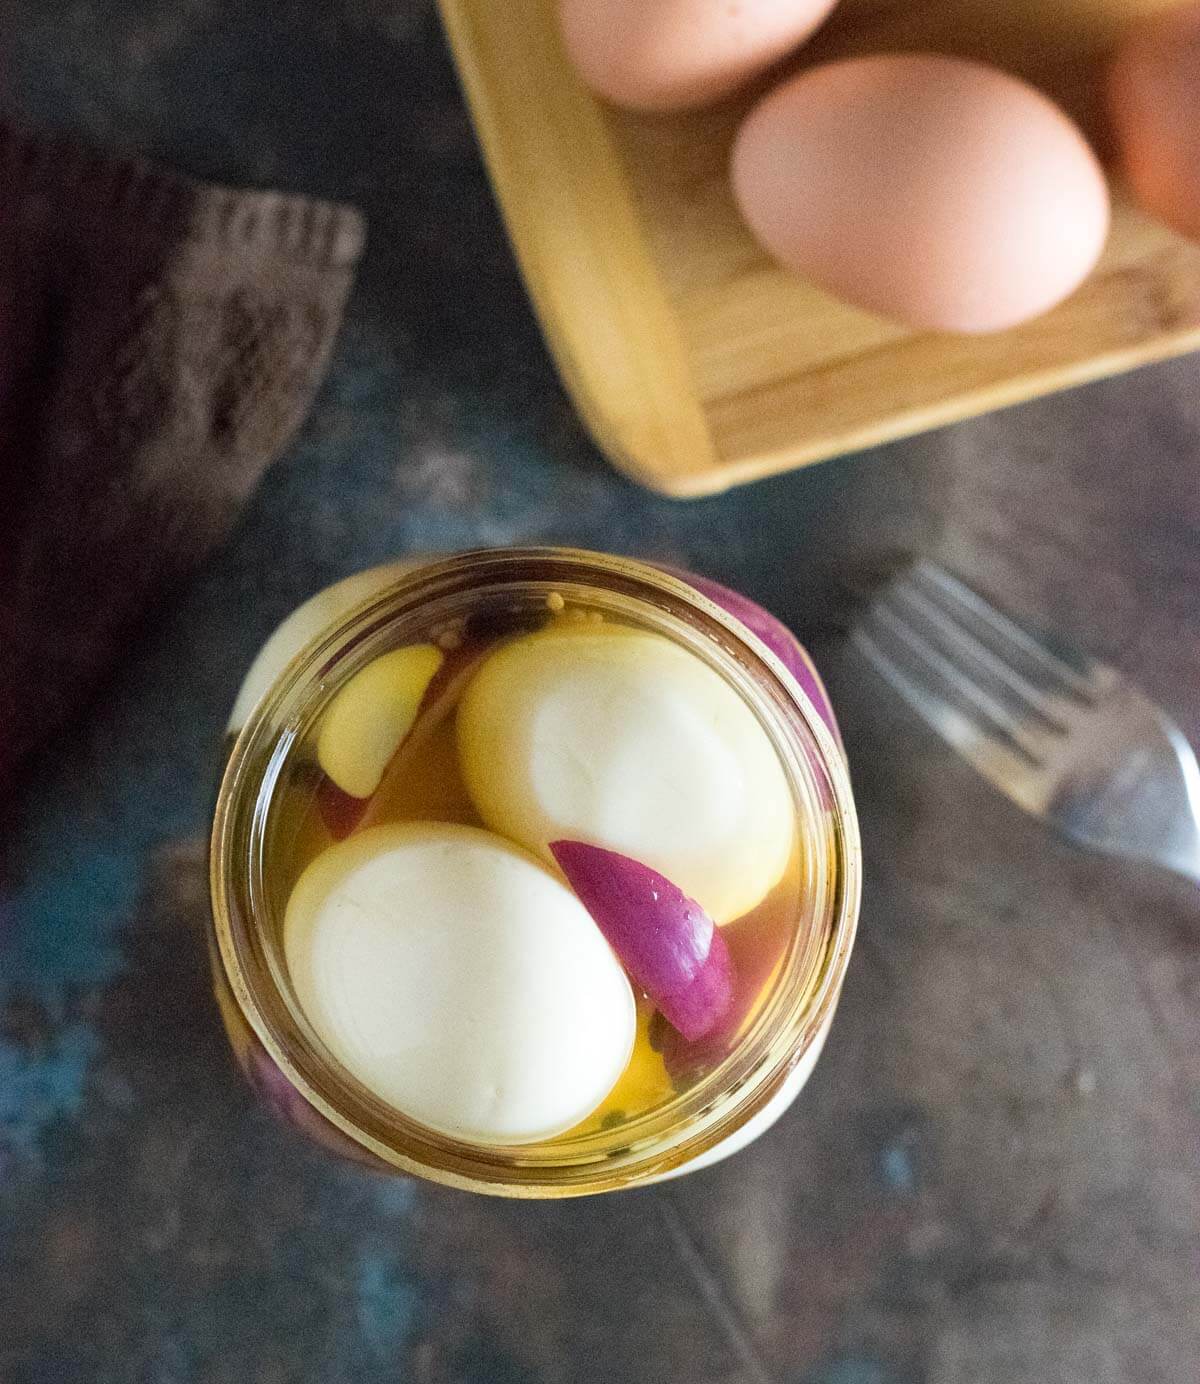 Serving pickled eggs with apple cider vinegar.